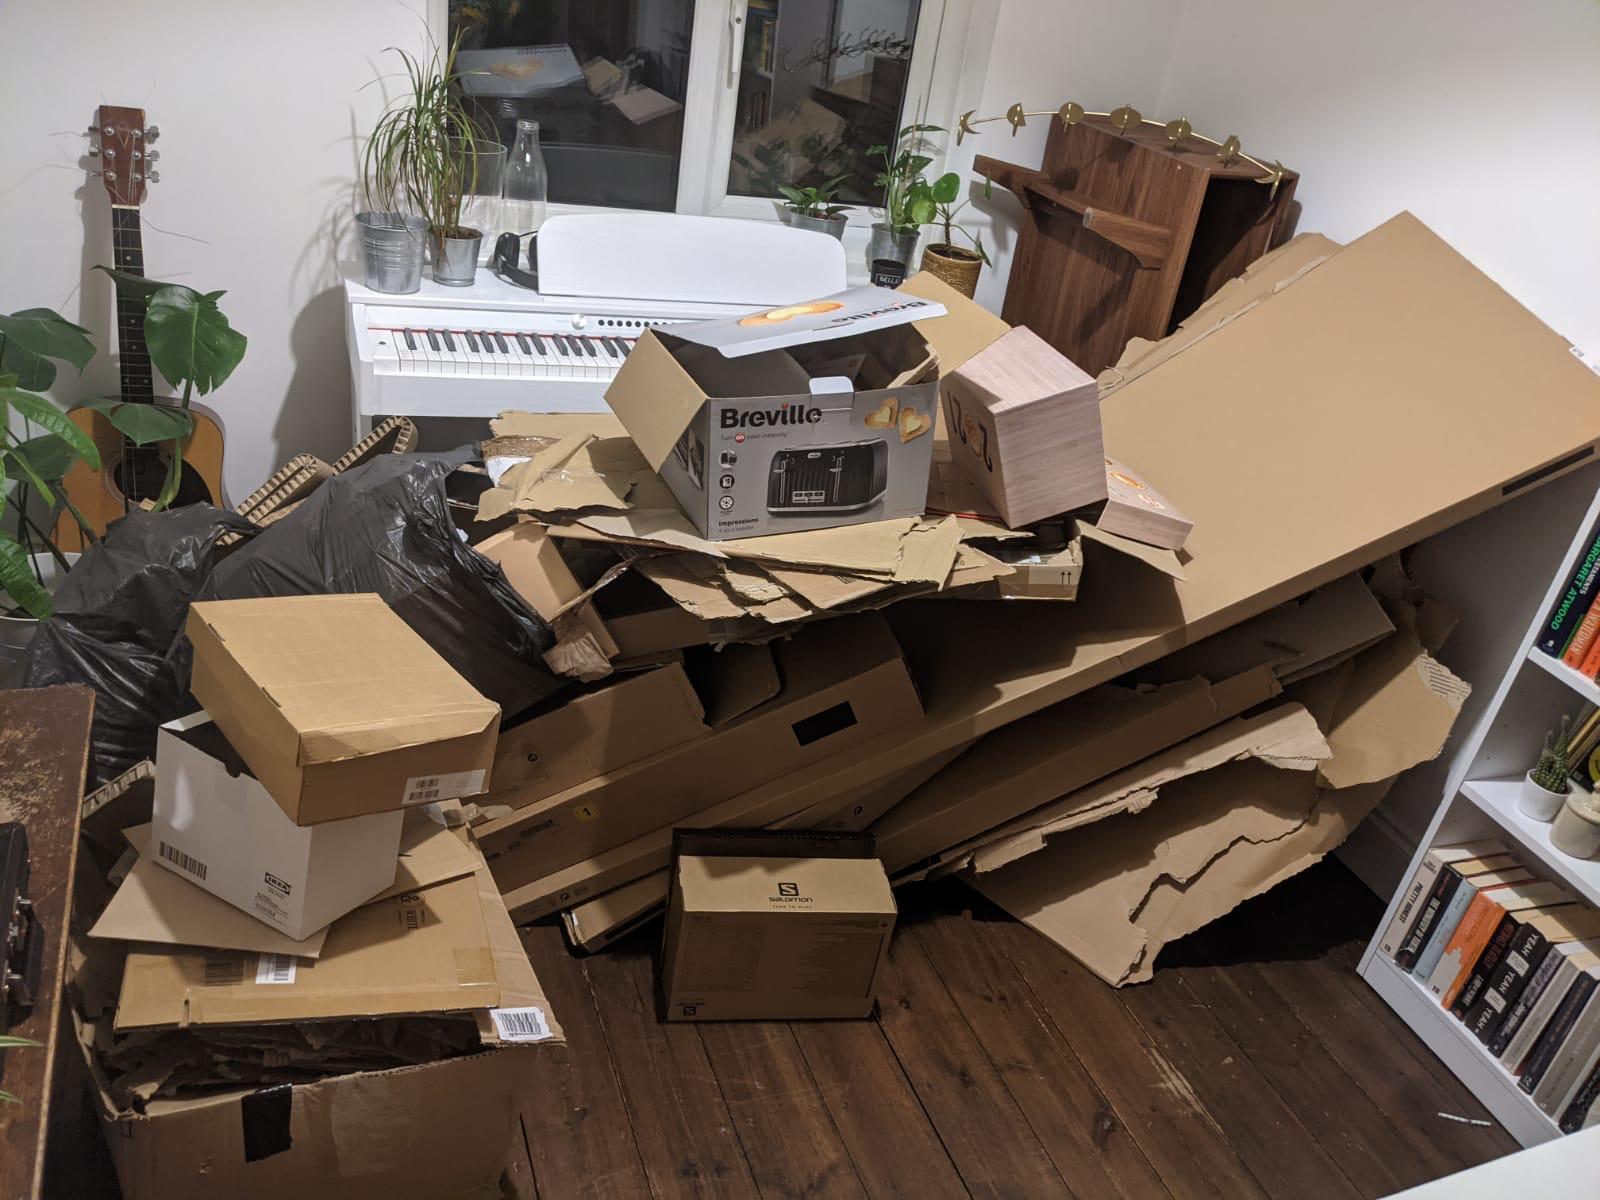 Cardboard, packaging and junk